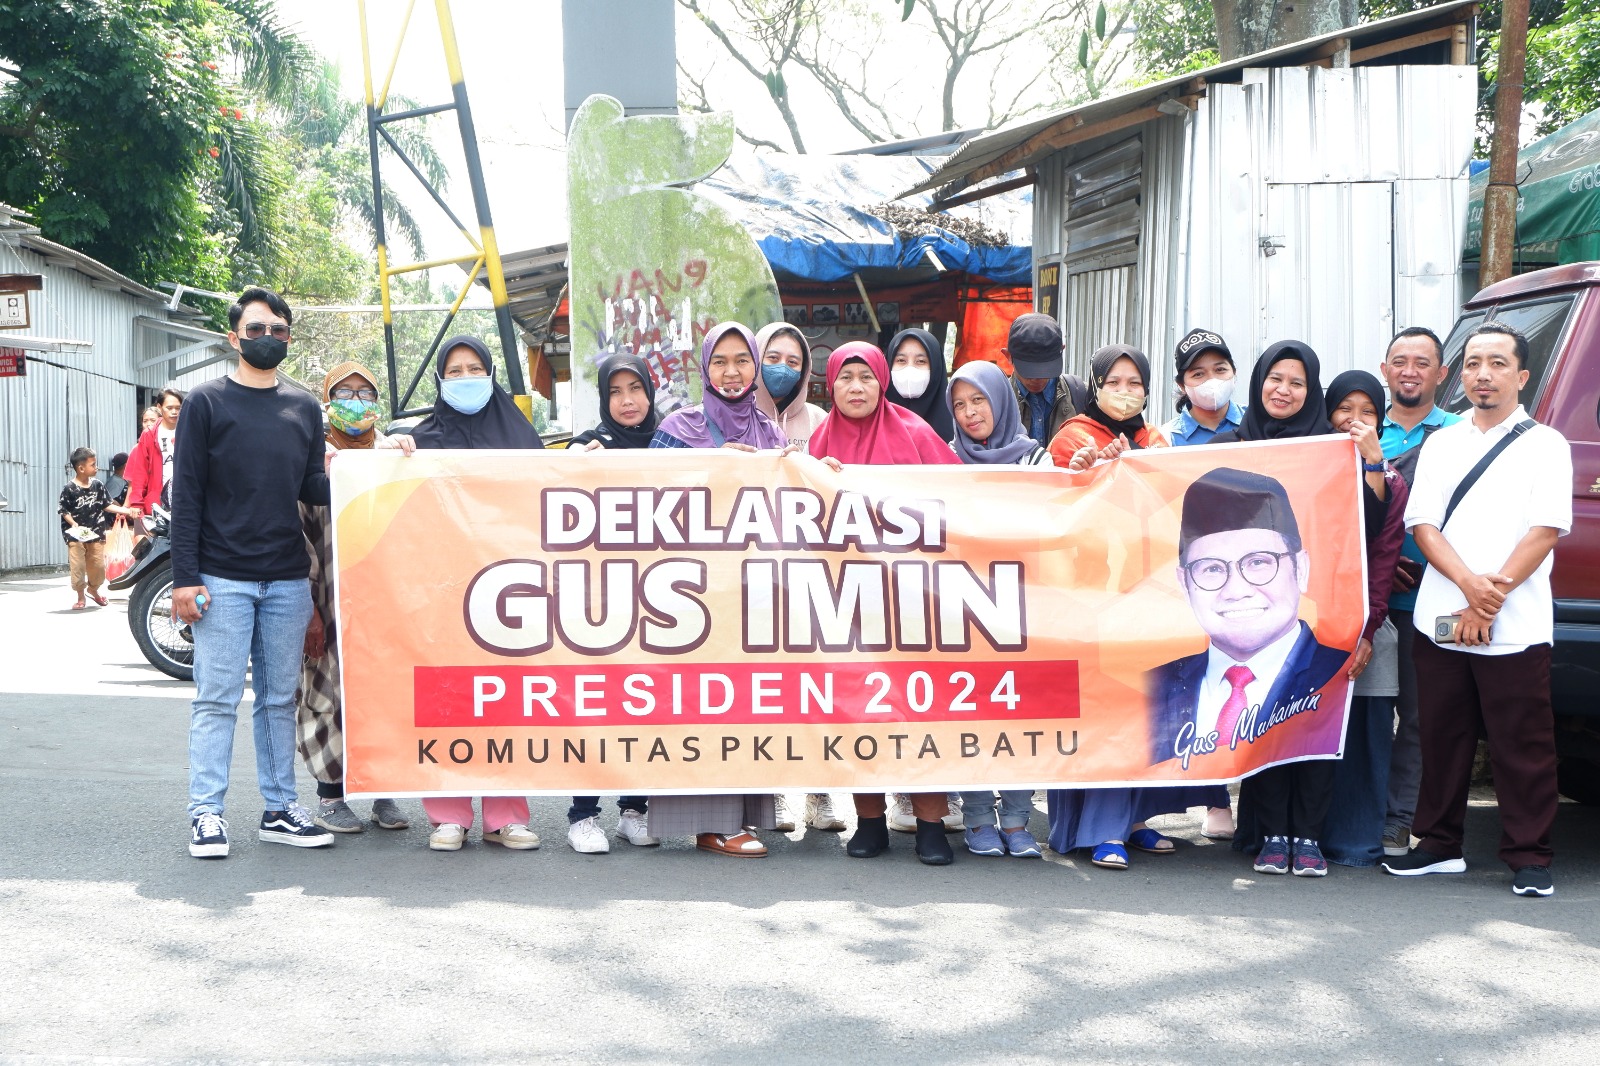 Komunitas PKL Kota Batu Deklarasikan Dukungan Gus Imin Presiden 2024